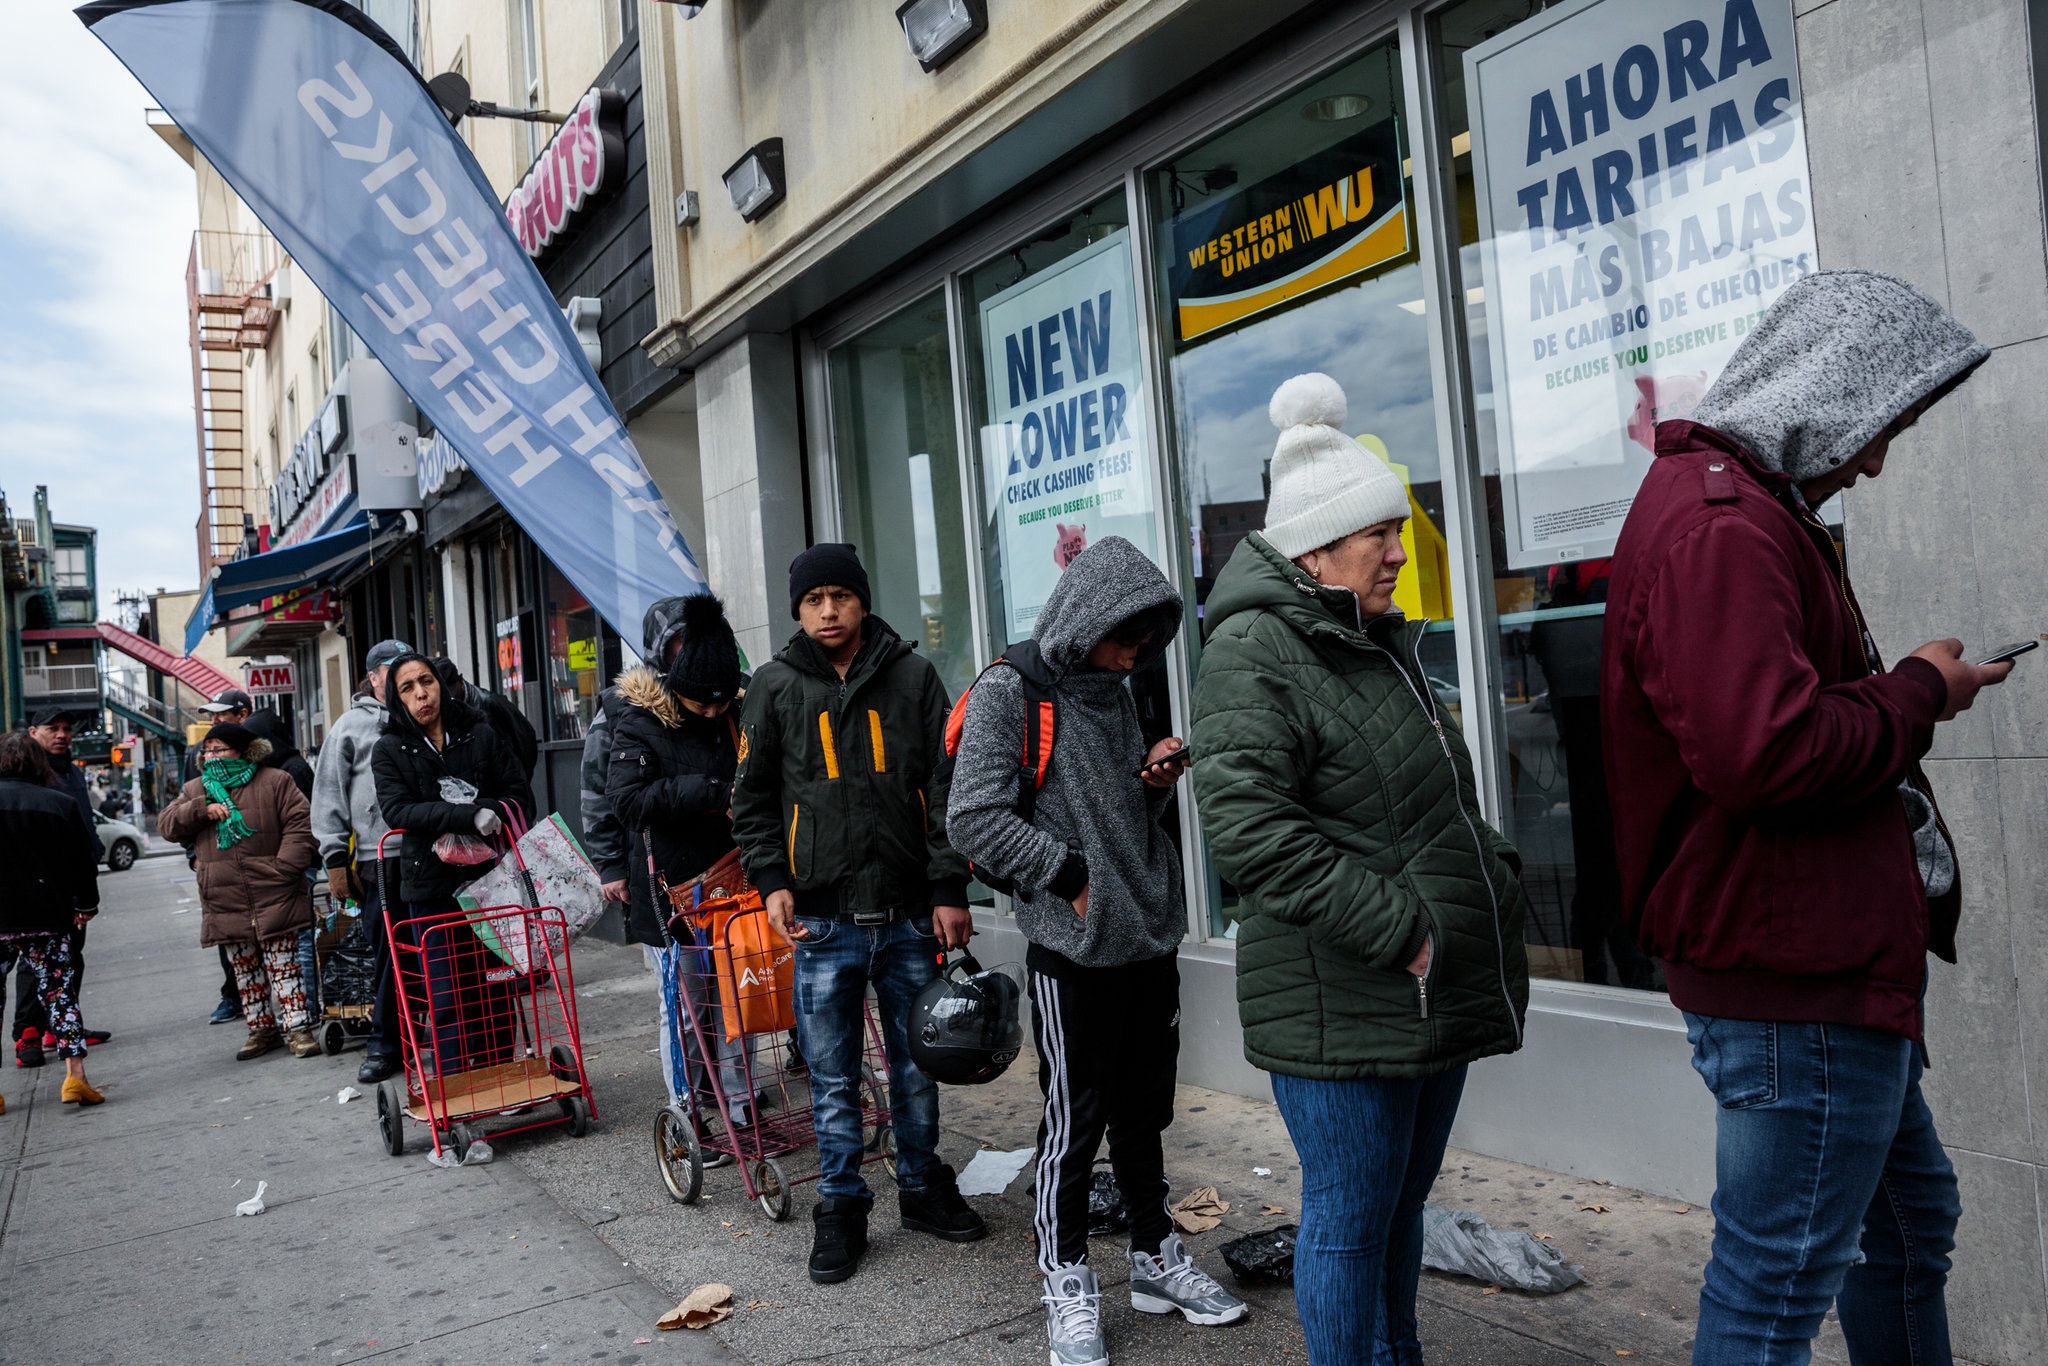 Người dân New York xếp hàng mua sắm nhưng không cách xa nhau tối thiểu 1 mét, không đeo khẩu trang như khuyến cáo (ảnh: NY Times)&nbsp;&nbsp;